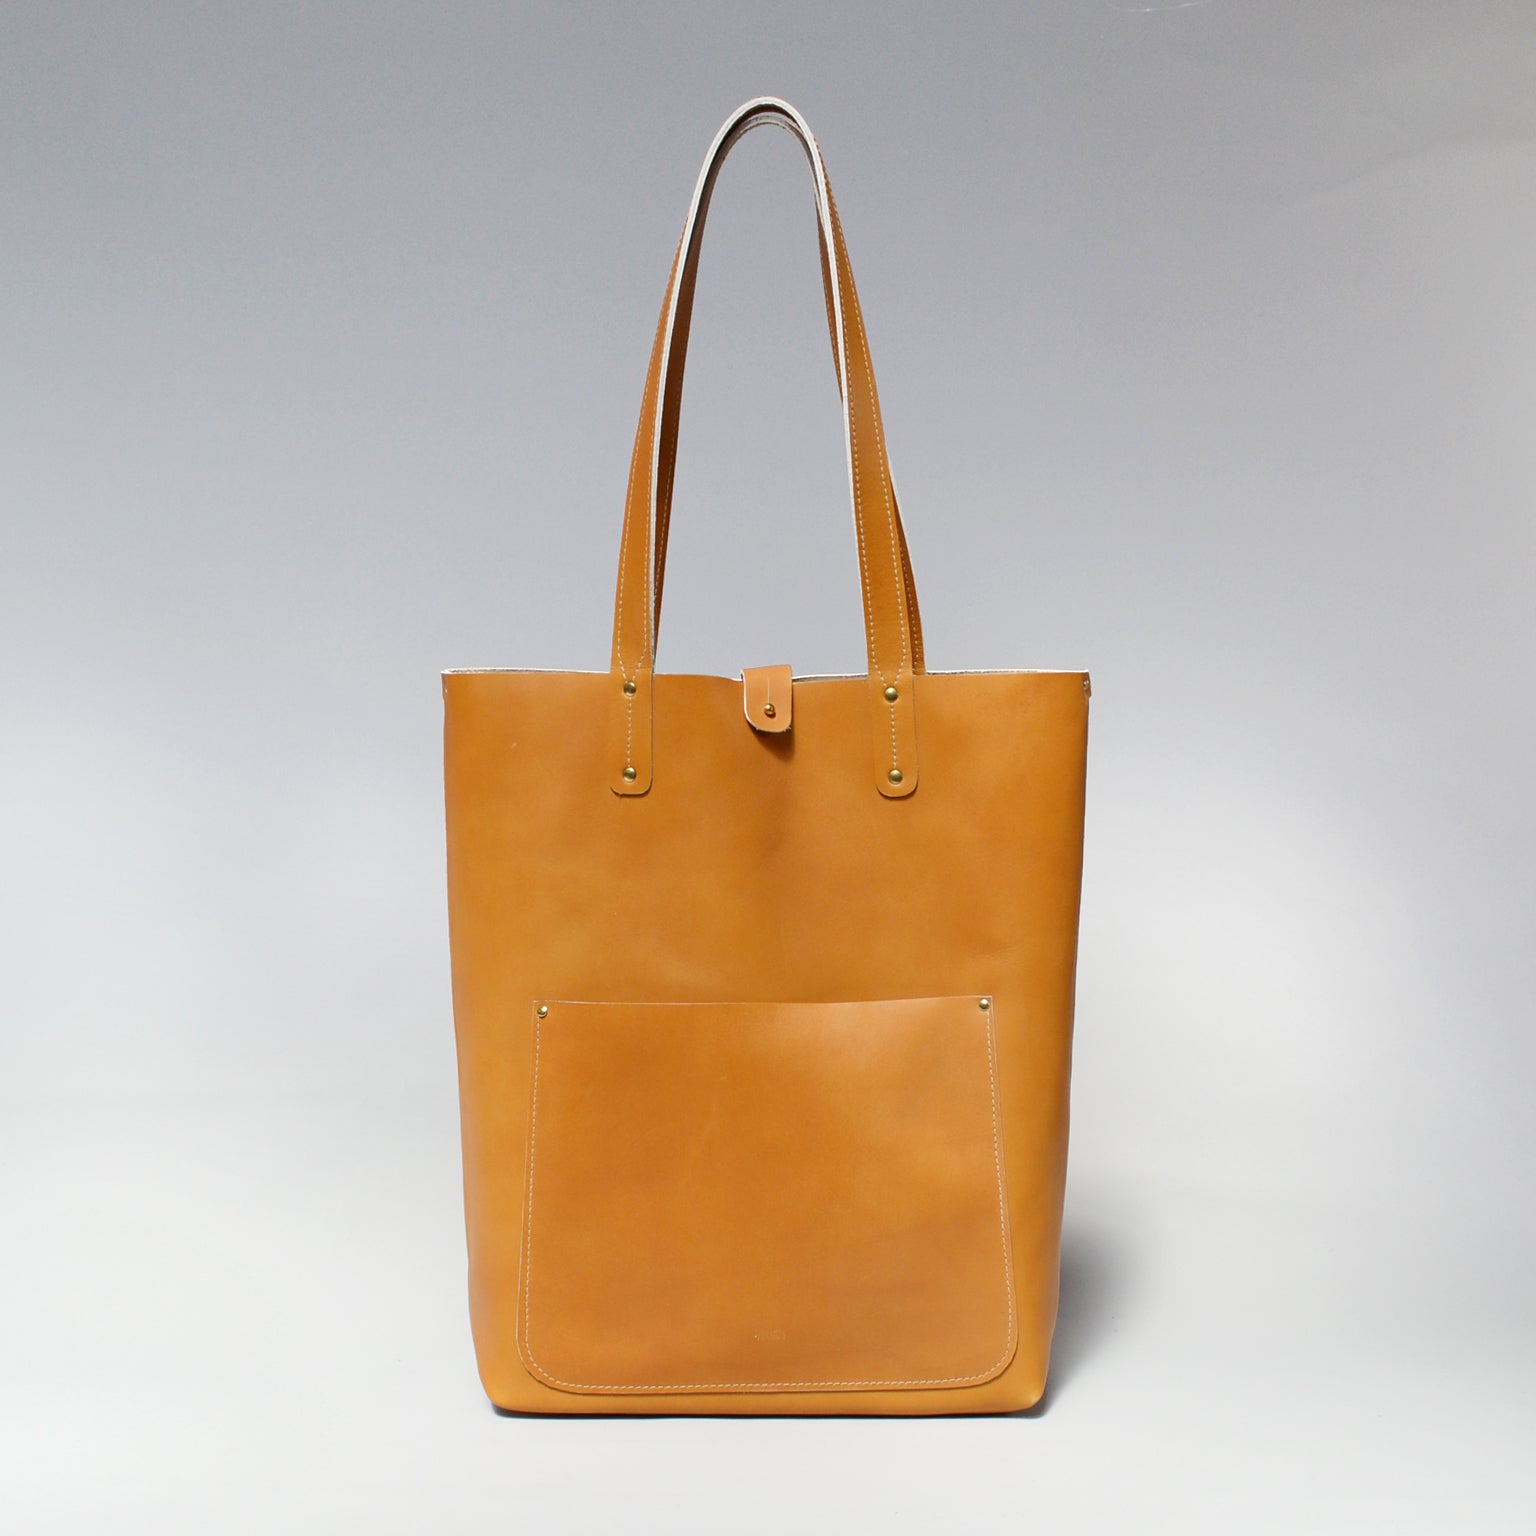 ZETA <br/> Leather Tote Bag <br/> Camel